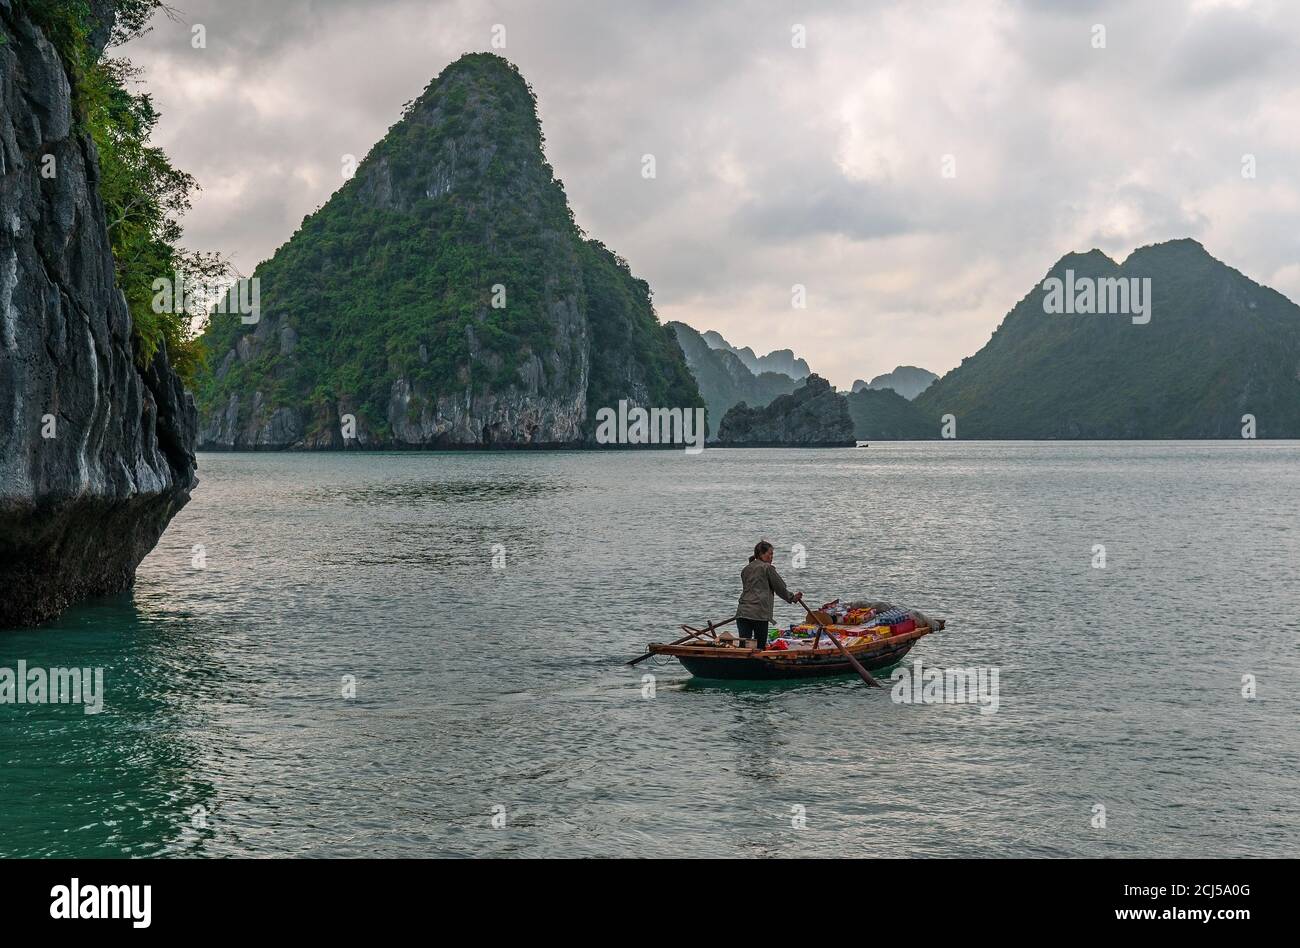 Vendedora vietnamita en barco tradicional entre el karst de Halong Bay, Mar de China del Sur, Vietnam del Norte. Foto de stock